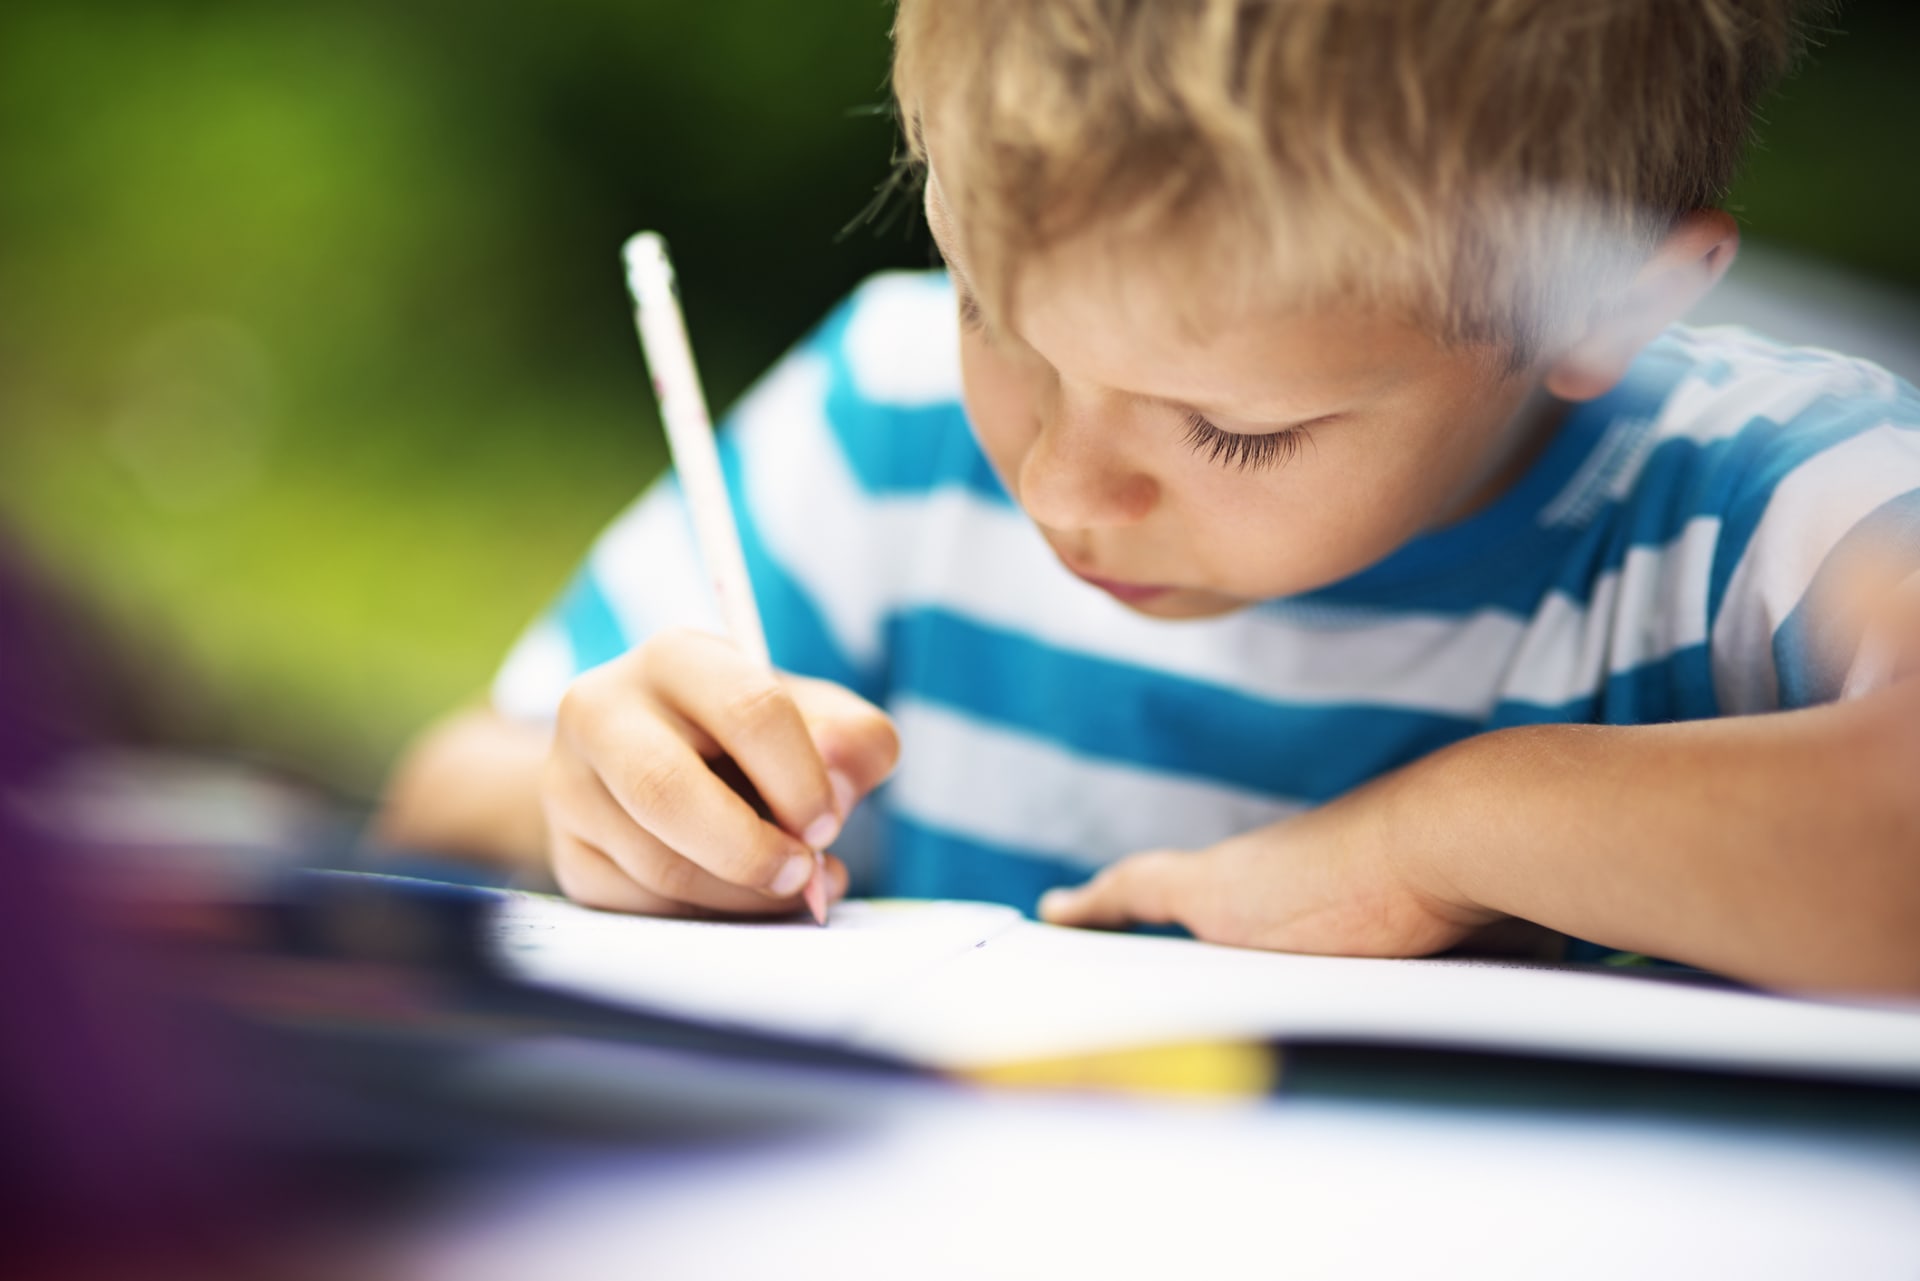 Pokud se dítě pravidelně hýbe, lépe se pak naučí psát